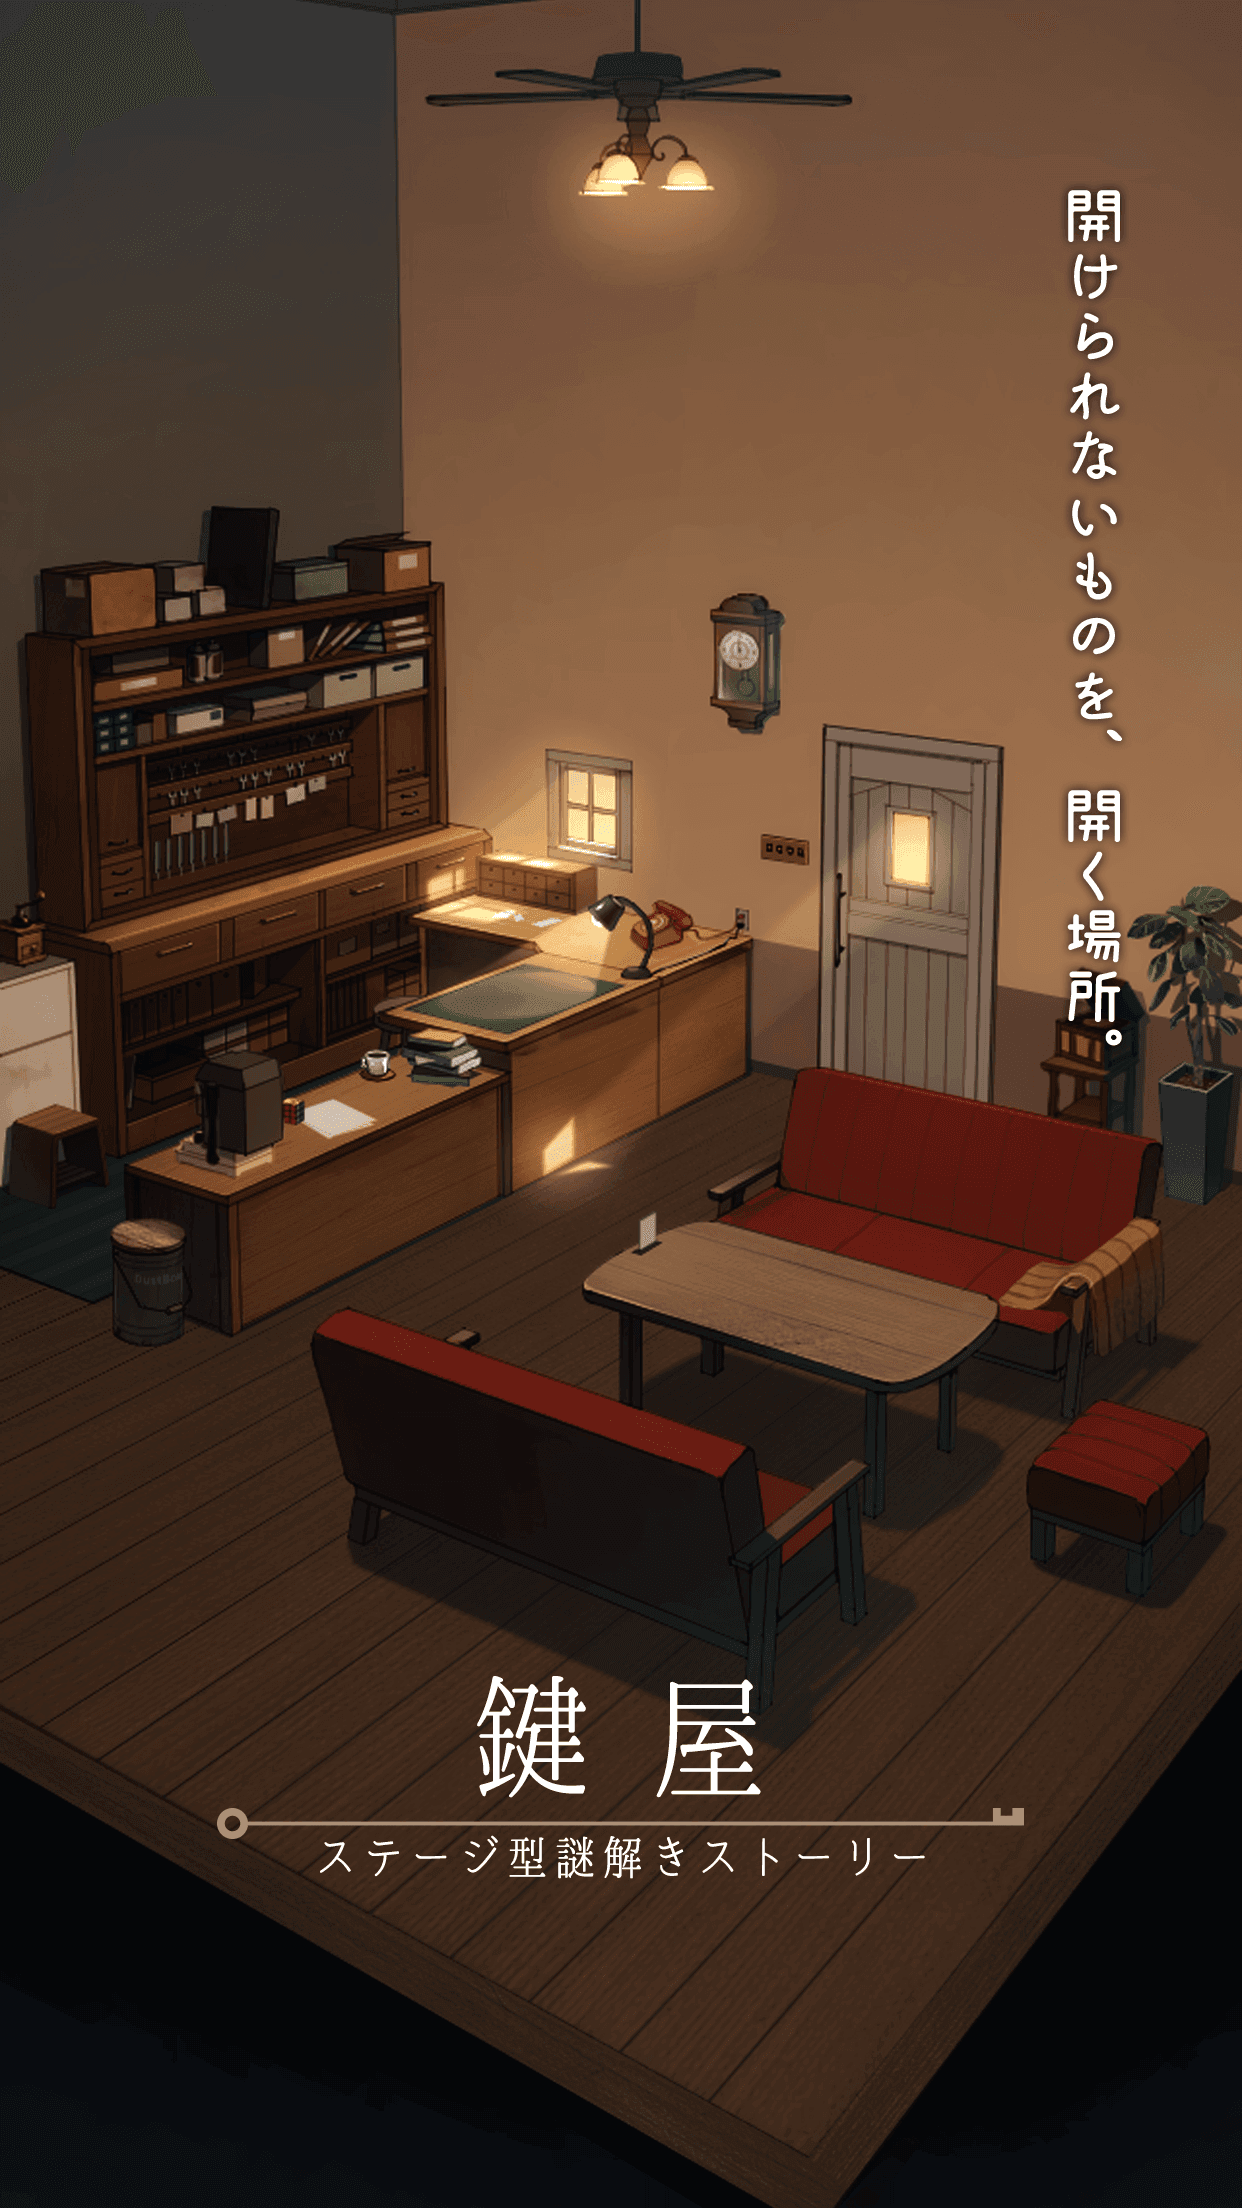 Screenshot 1 of Kagiya stage-type mystery solving story 2.7.0